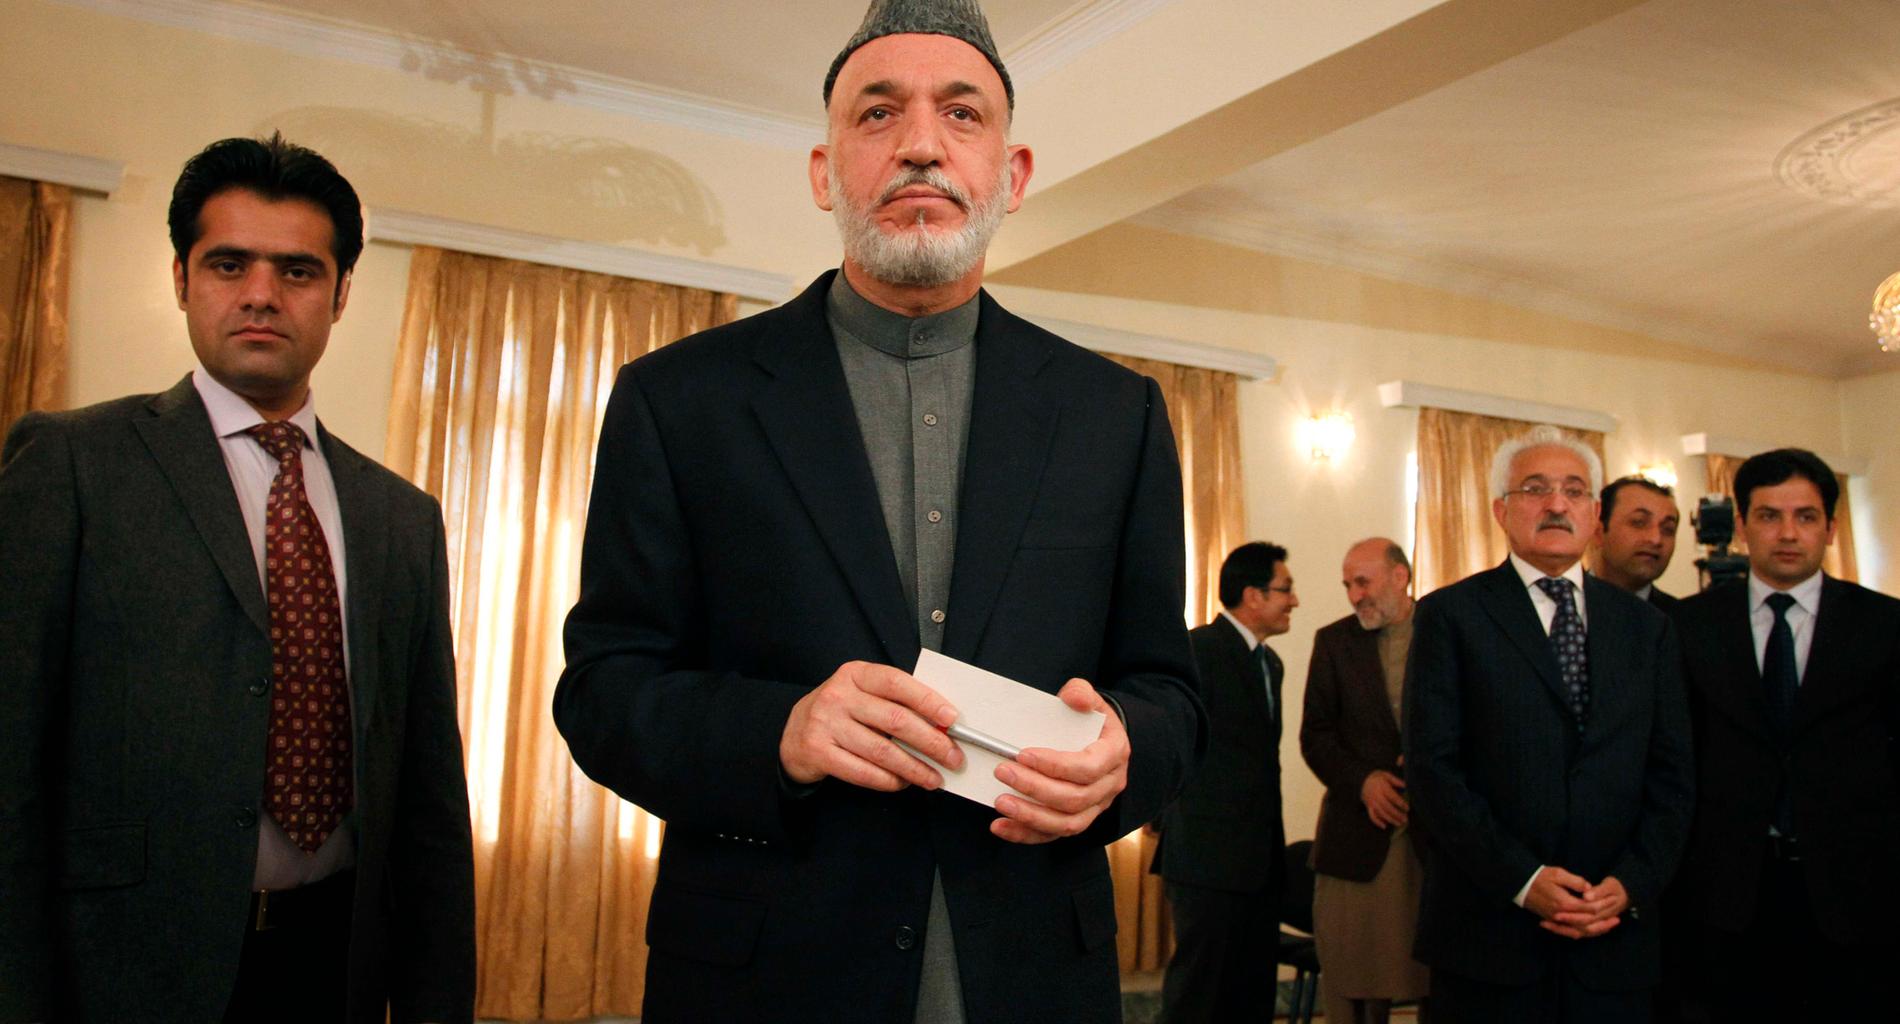 Afghanistans president Hamid Karzai vid en presskonferens i Kabul under tisdagen.